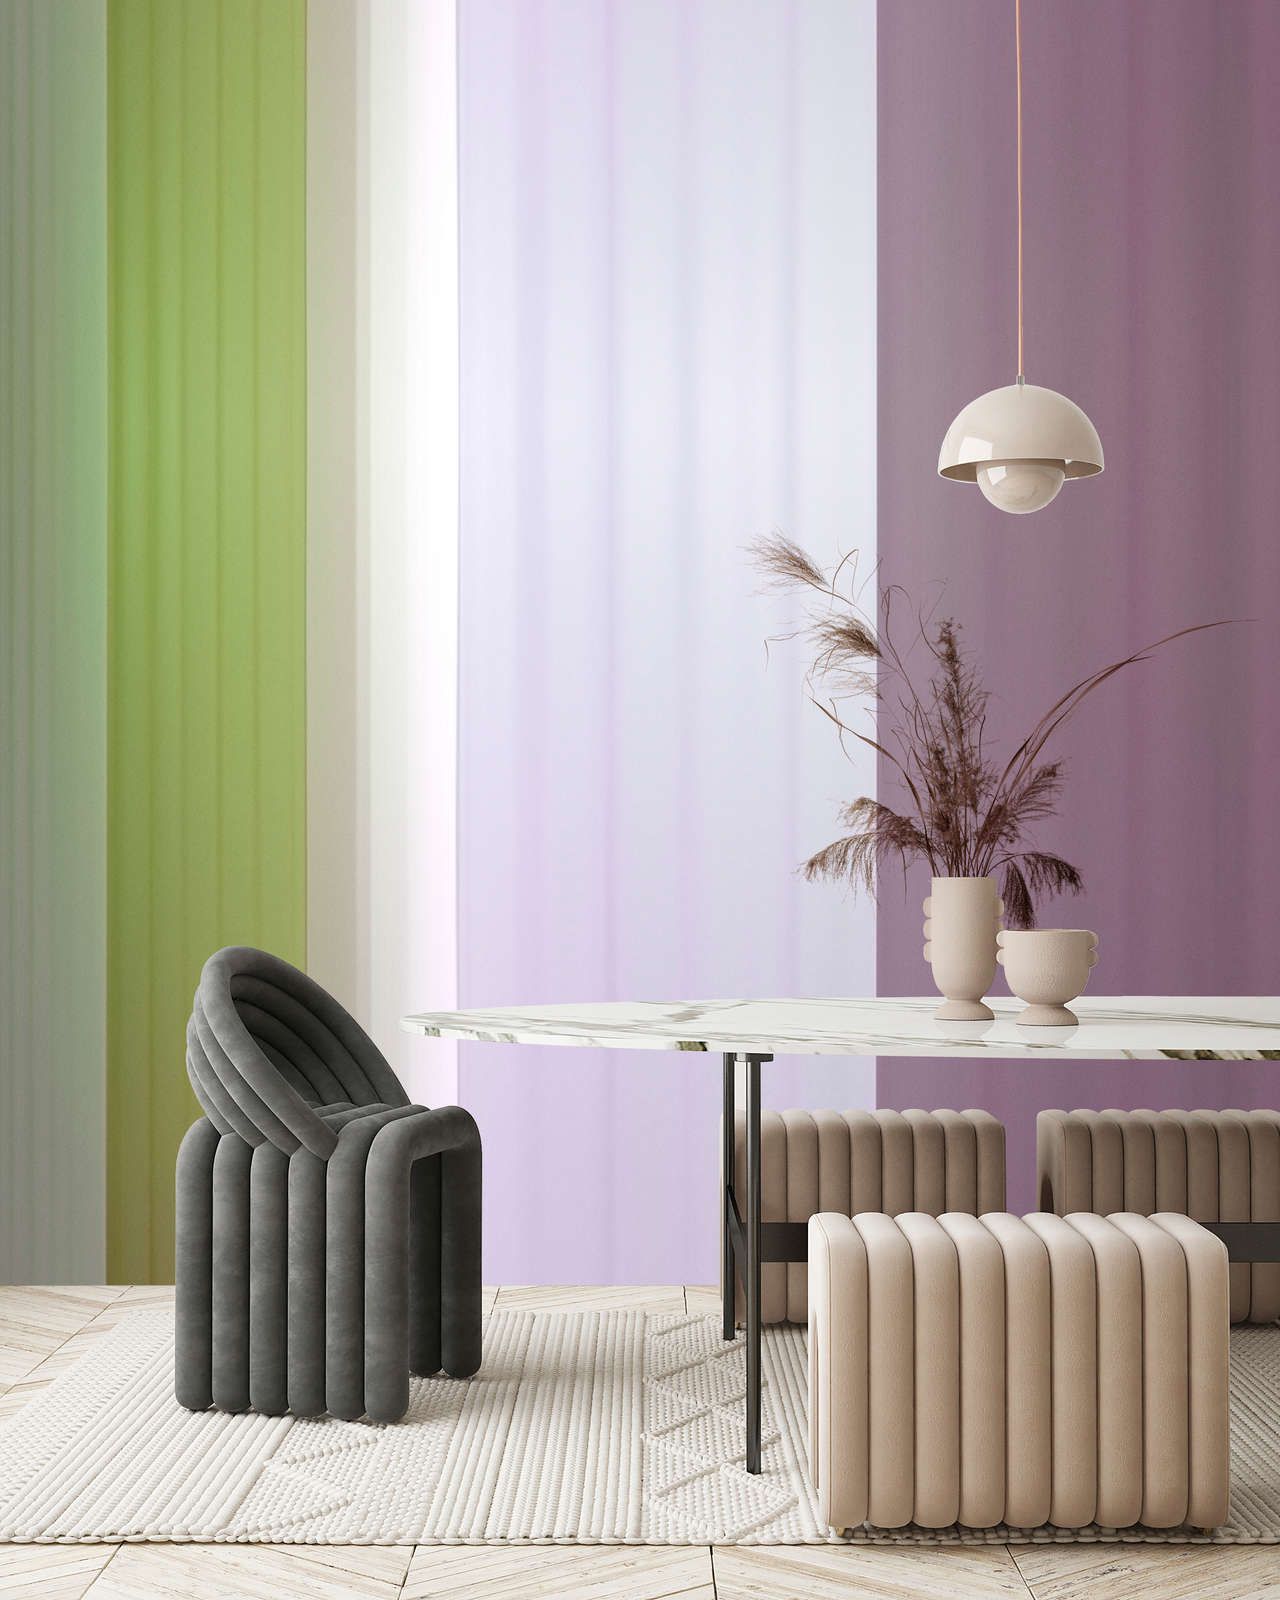             Fotomural »co-colores 3« - Degradado de color con rayas - verde, lila, morado | Material sin tejer ligeramente texturado
        